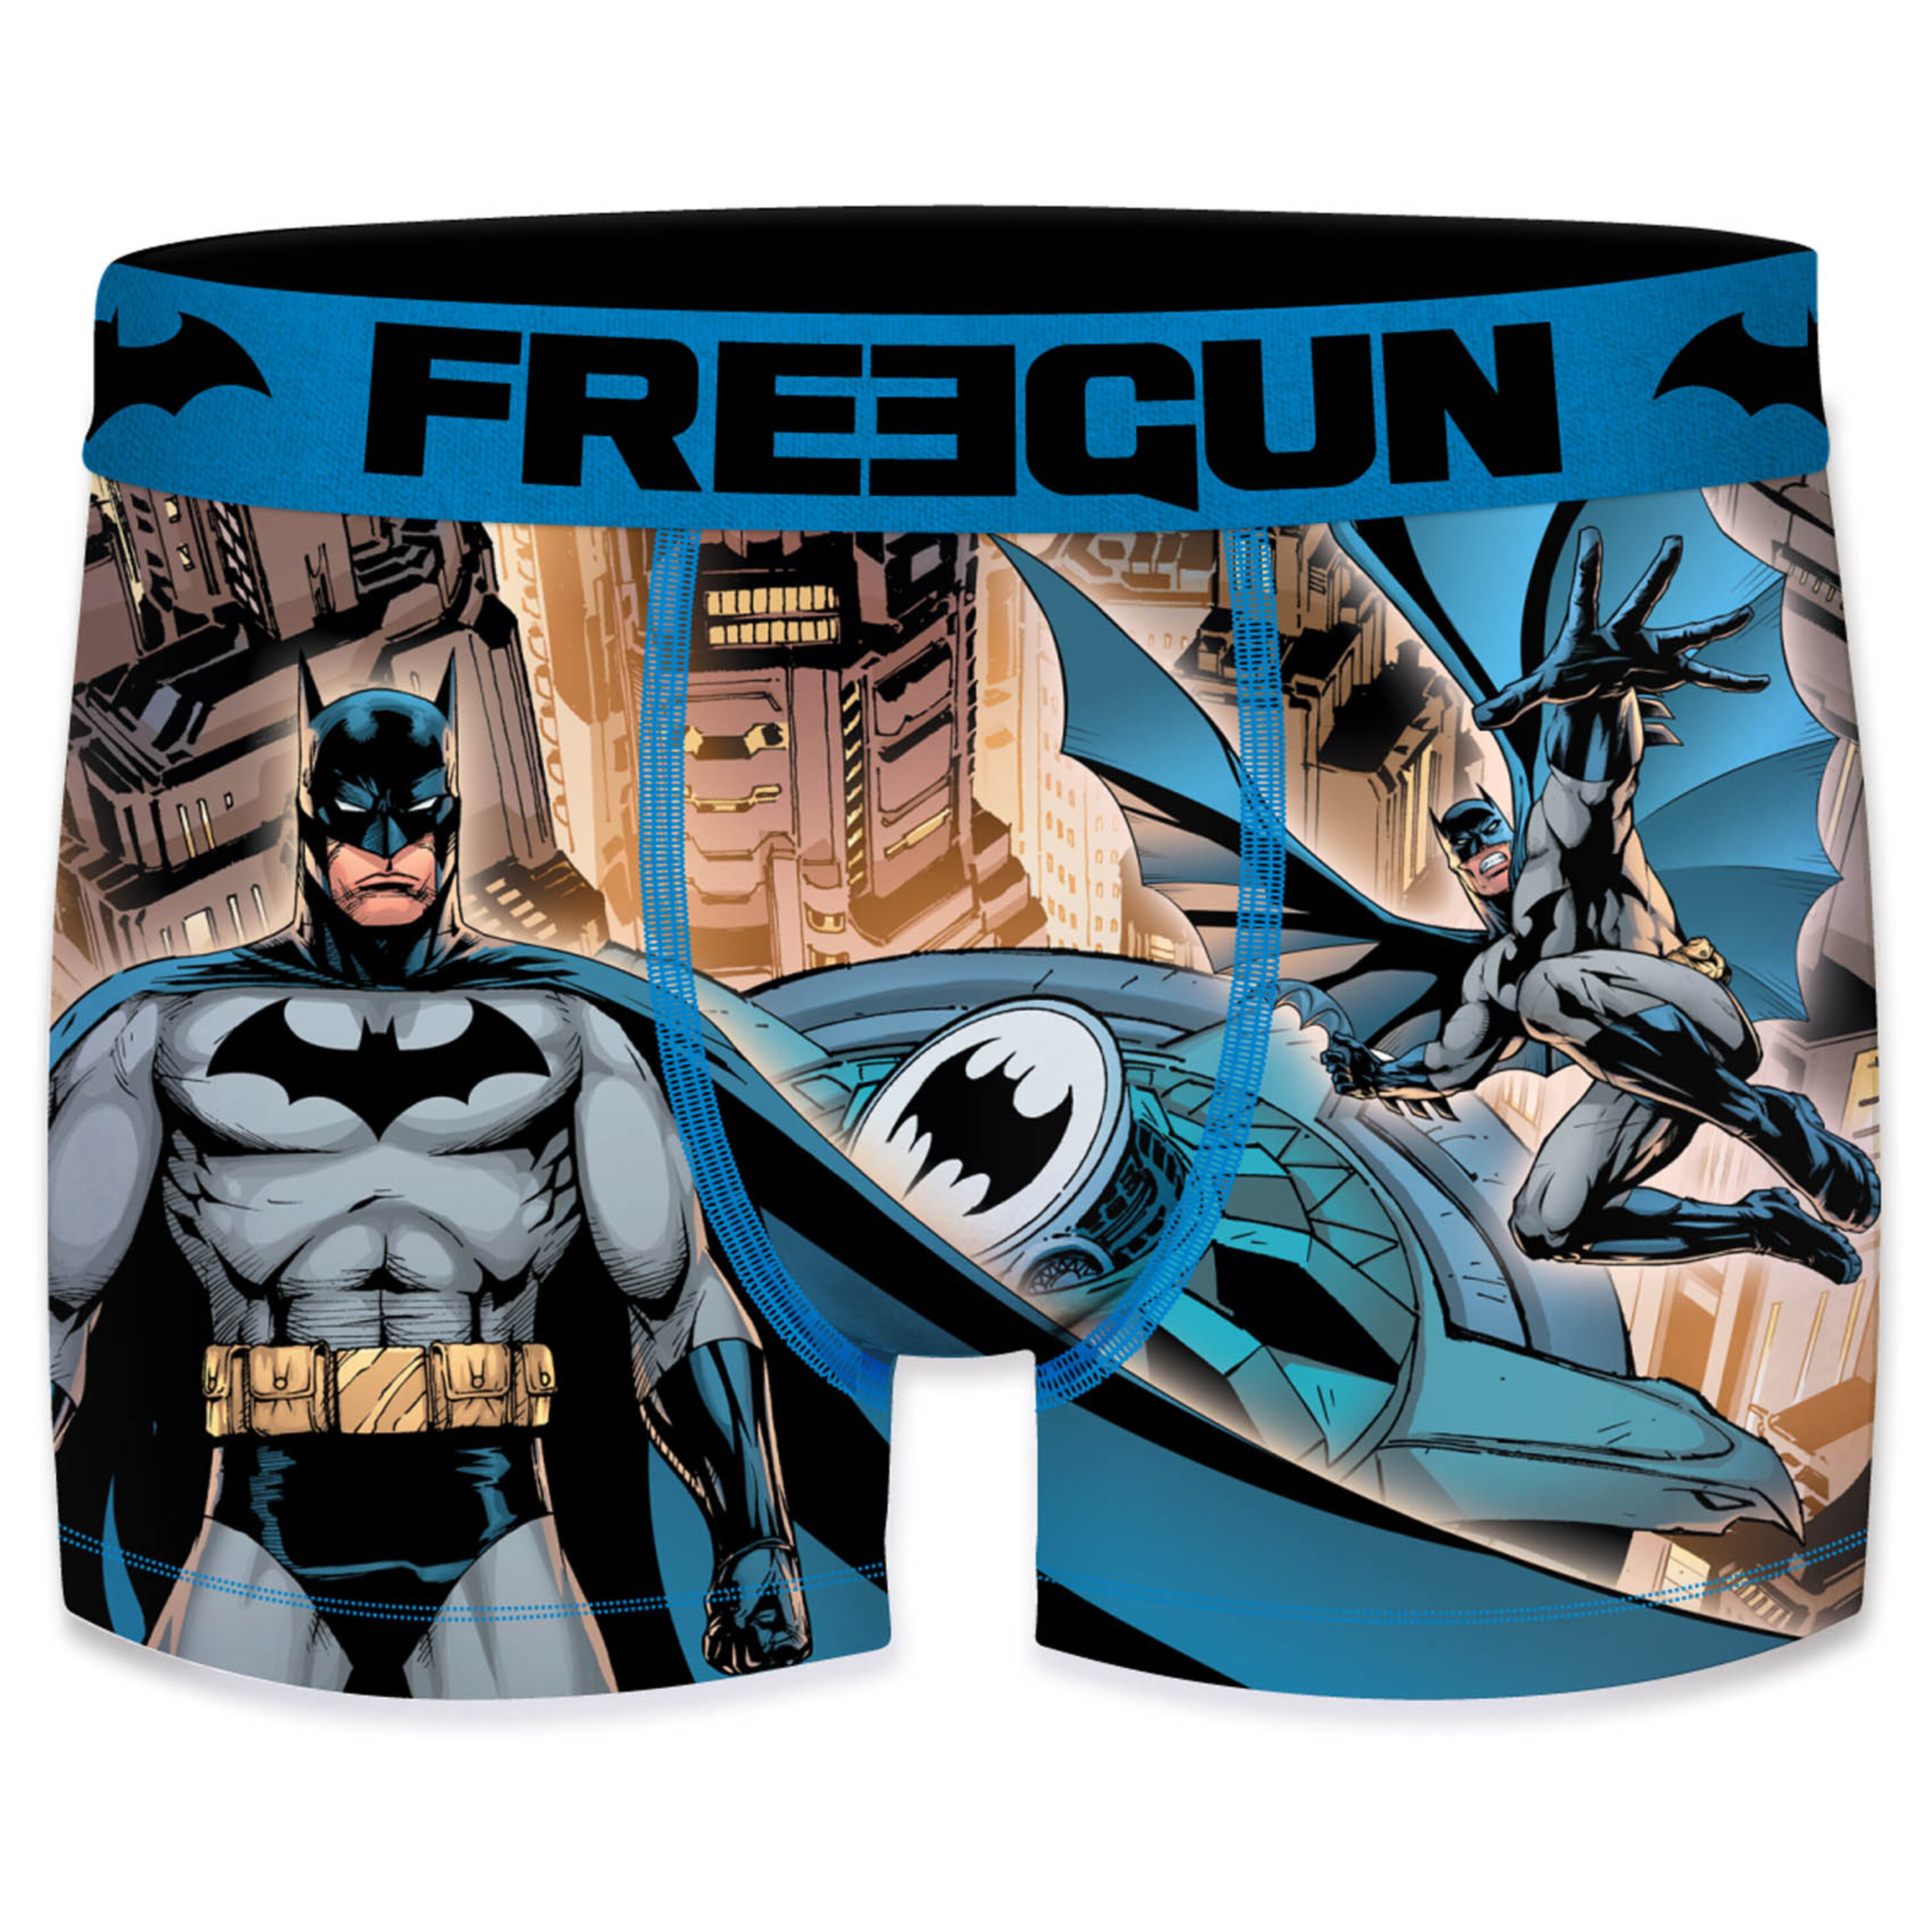 Calzoncillo Batman Freegun Para Niño - multicolor - 